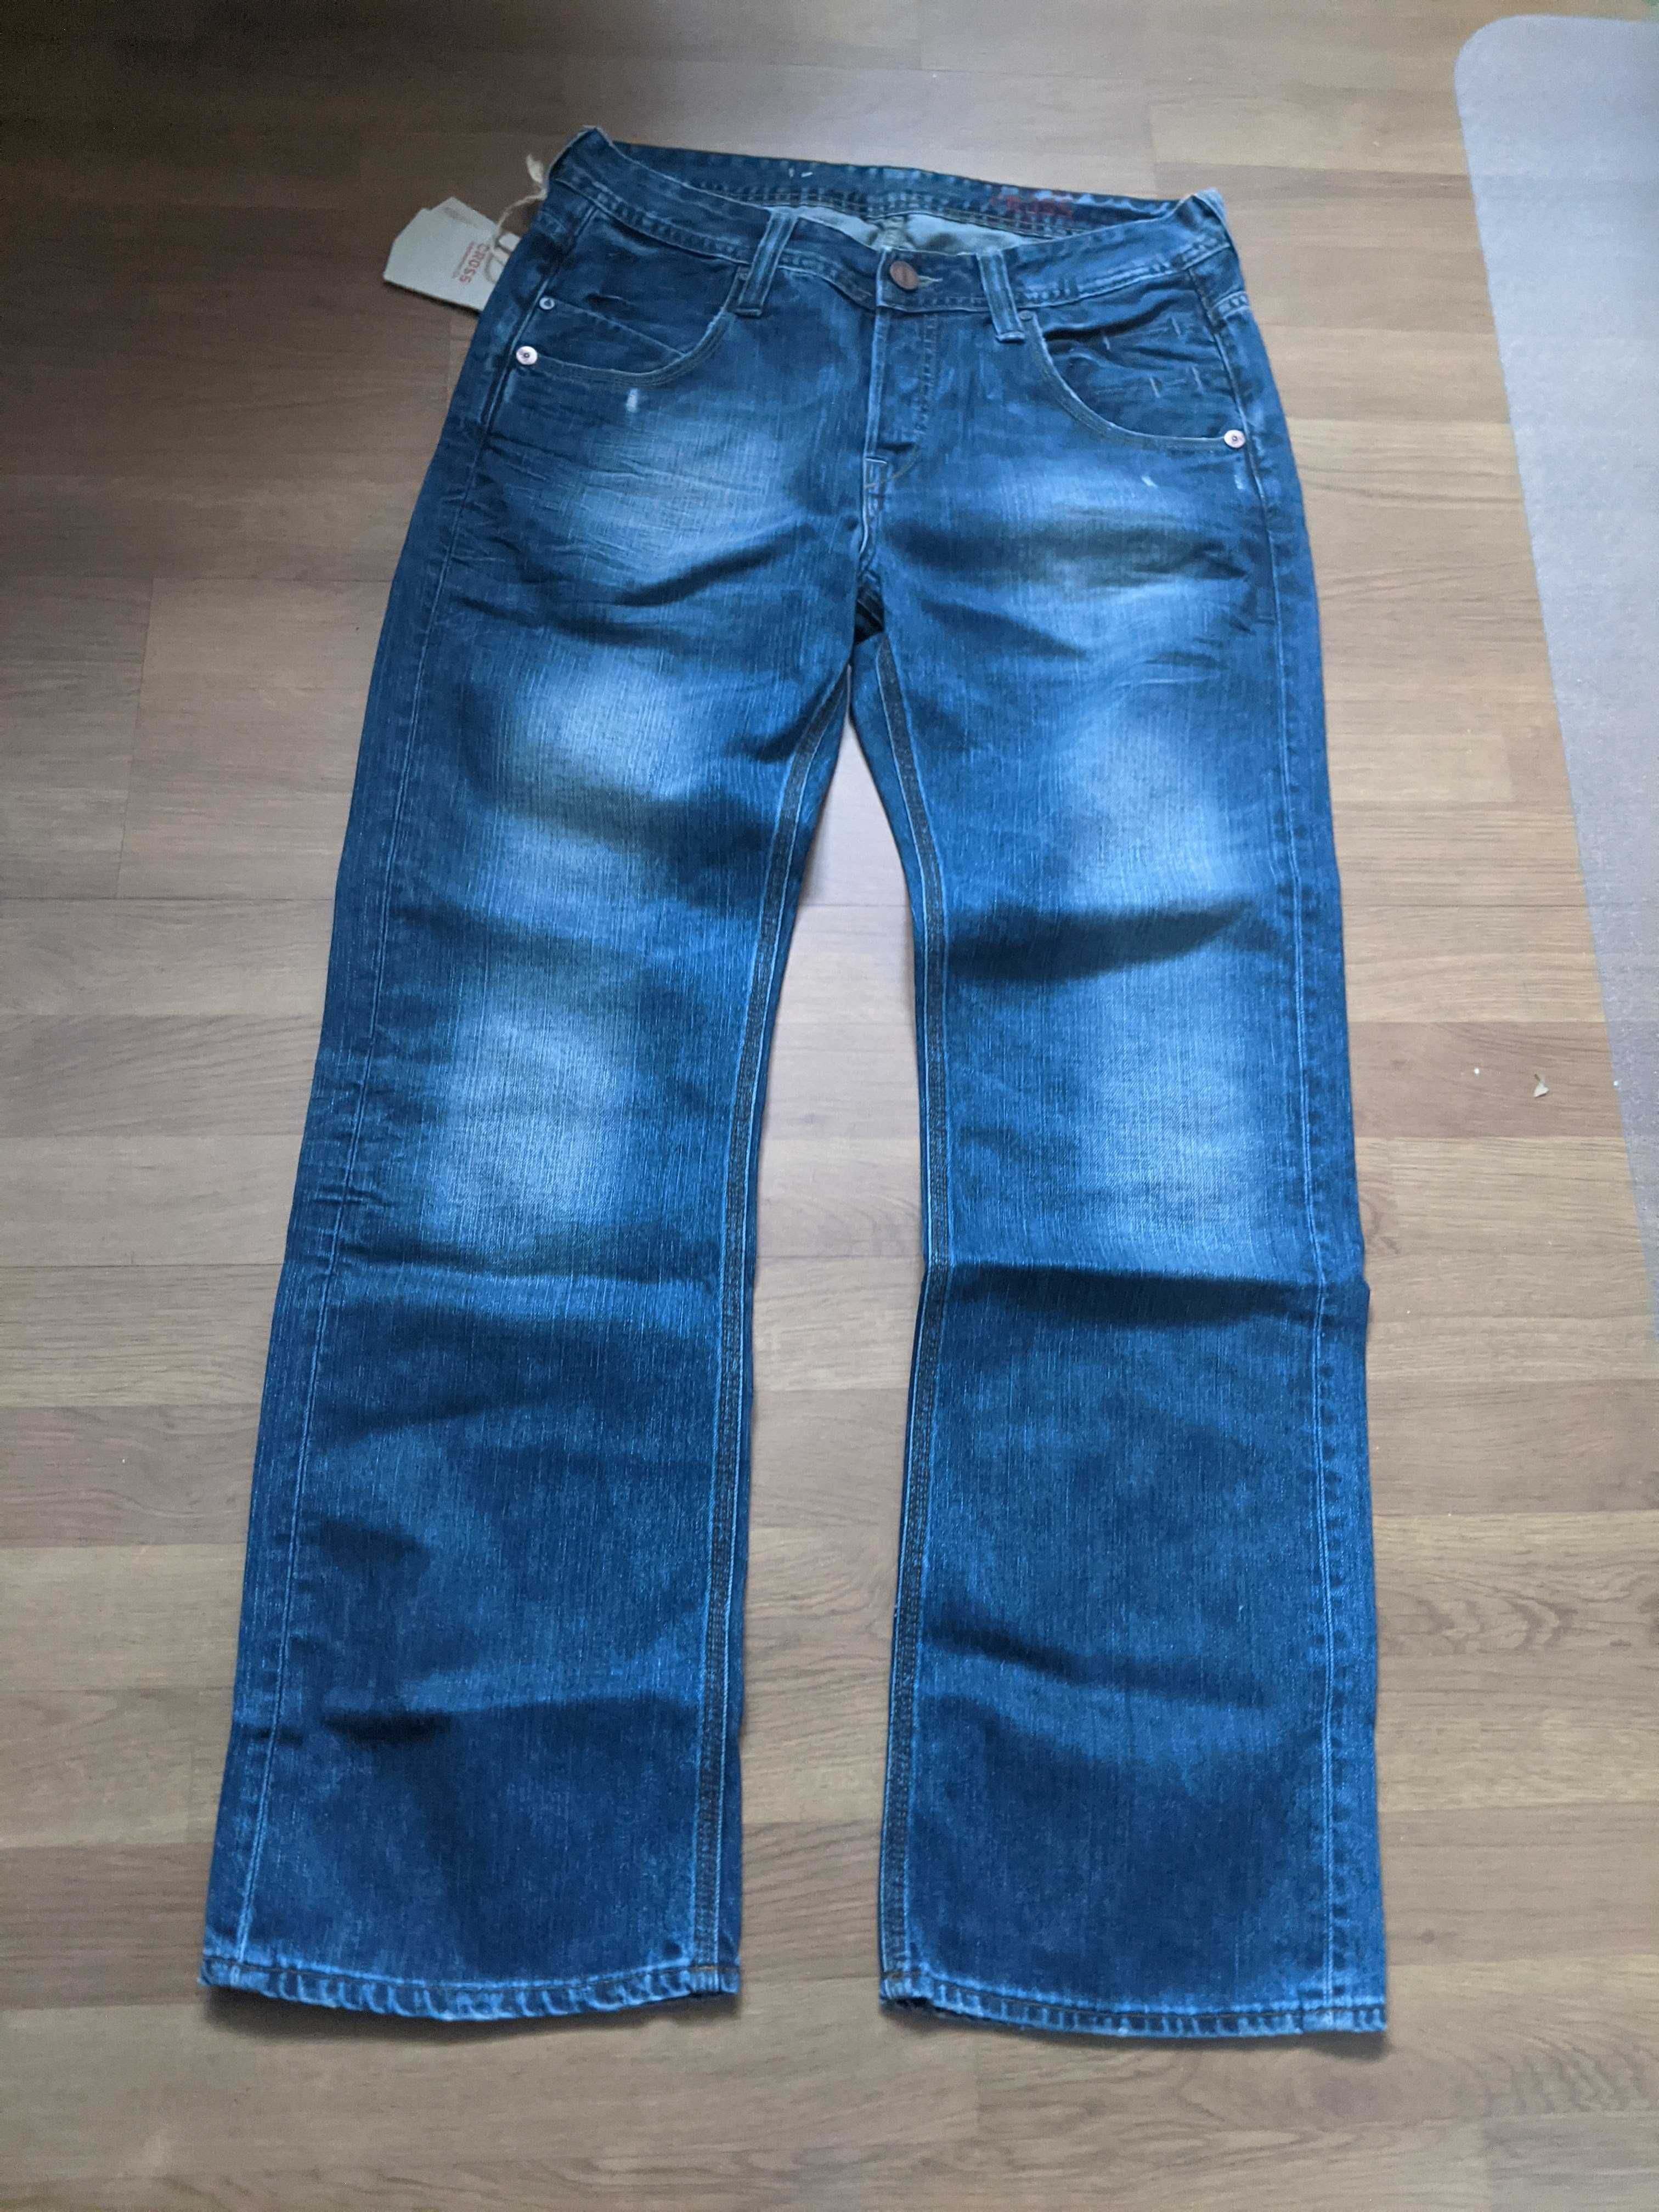 SPODNIE męskie jeans XL GROSS 31/30 pas 84 dziury NOWE